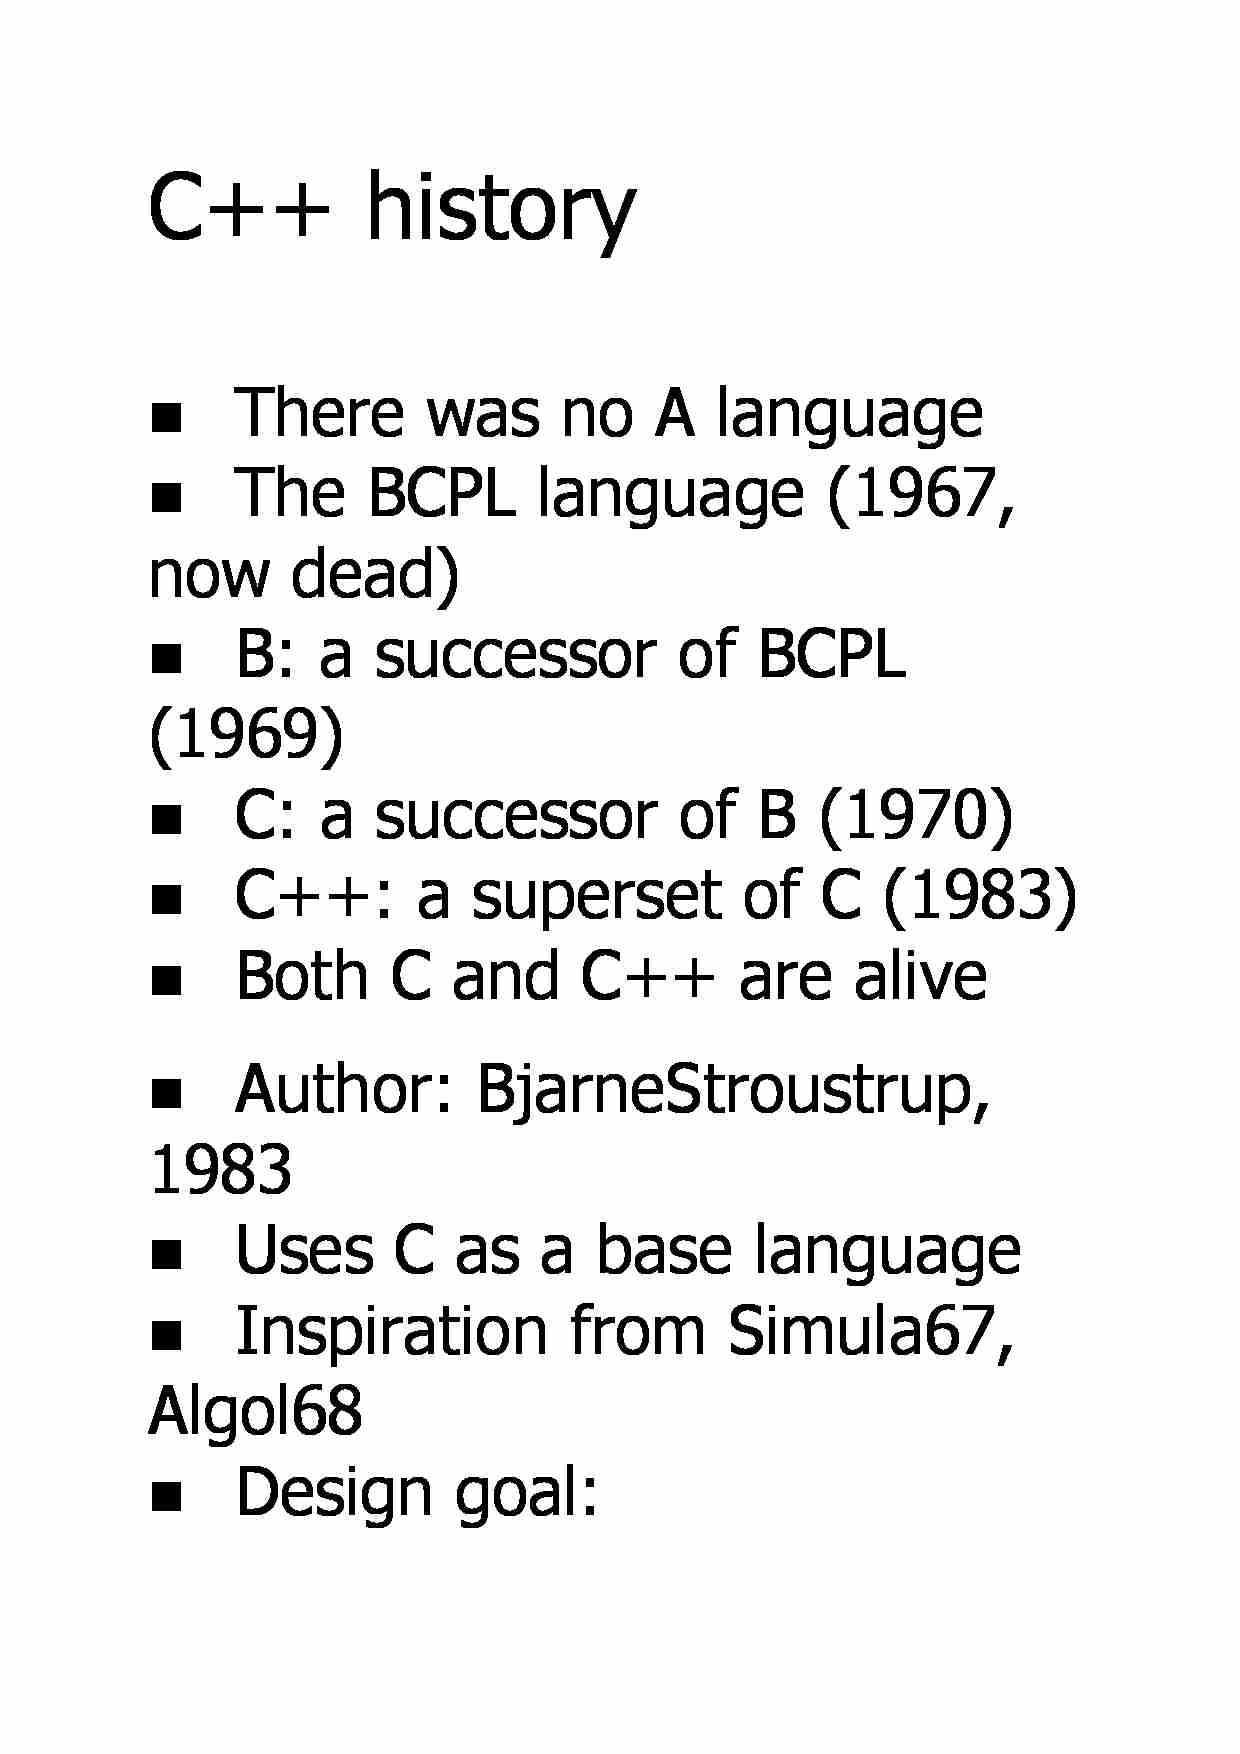 C++ history - strona 1